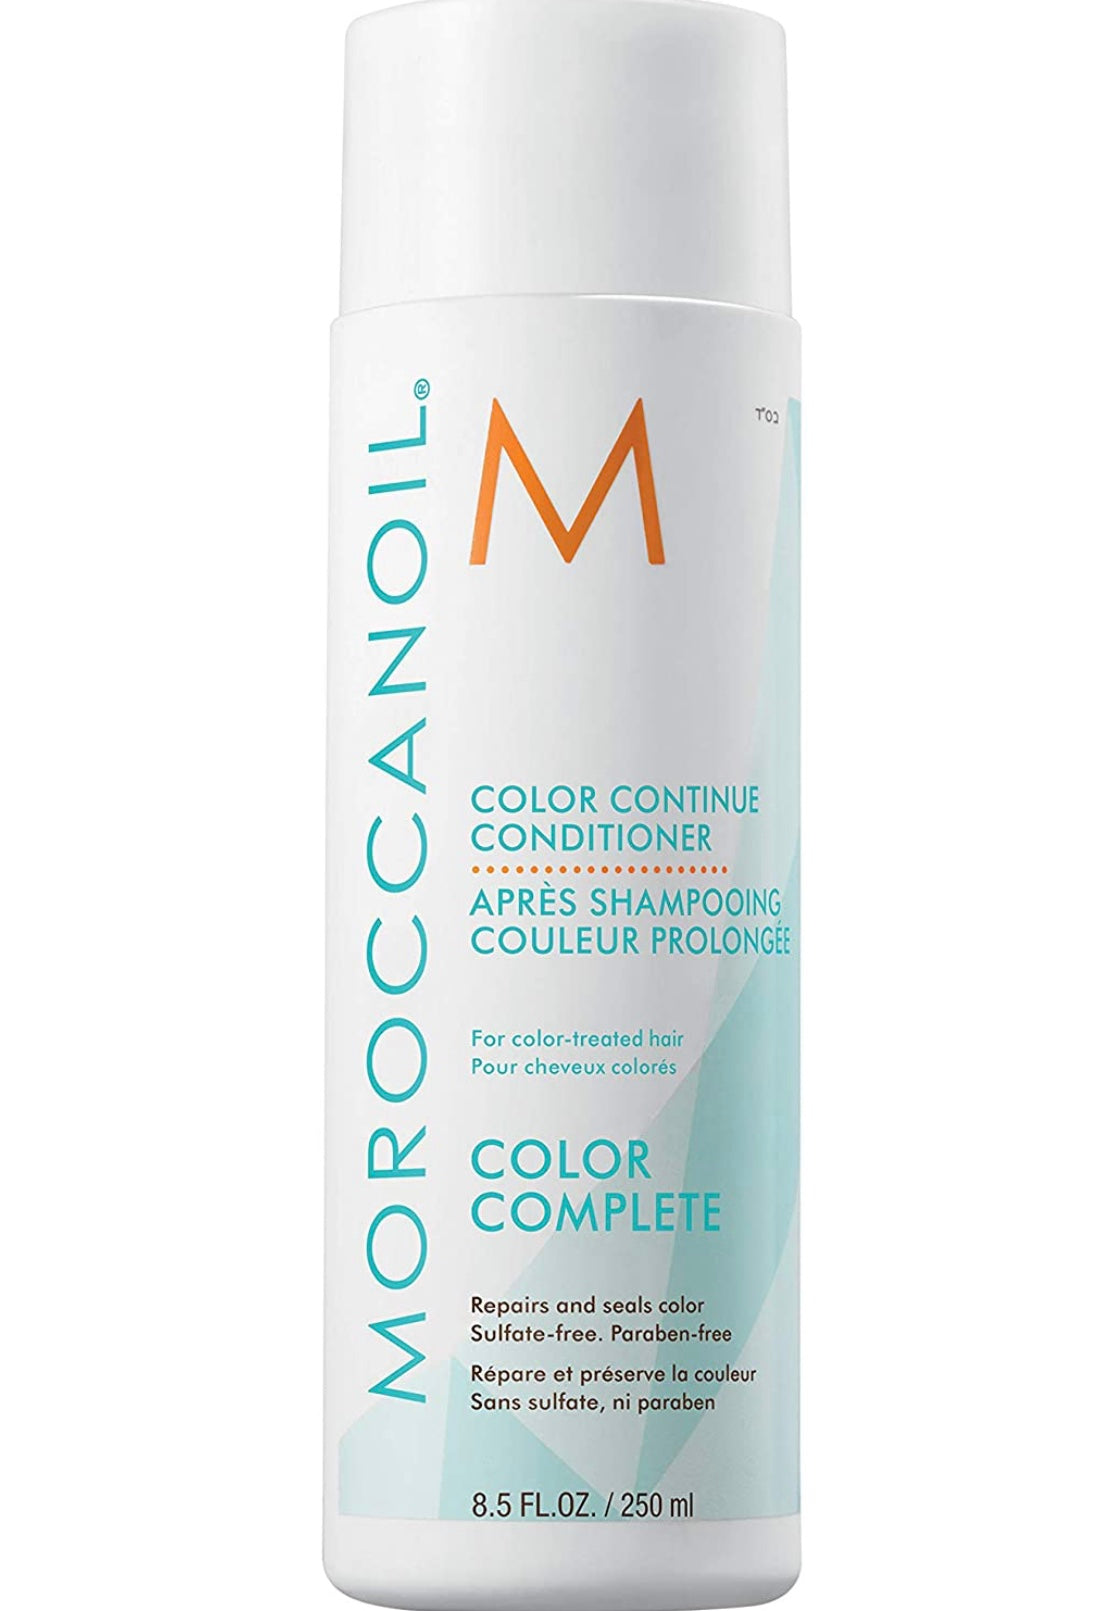 Moroccanoil - Color continue conditioner 8.5 fl. oz./ 250 ml